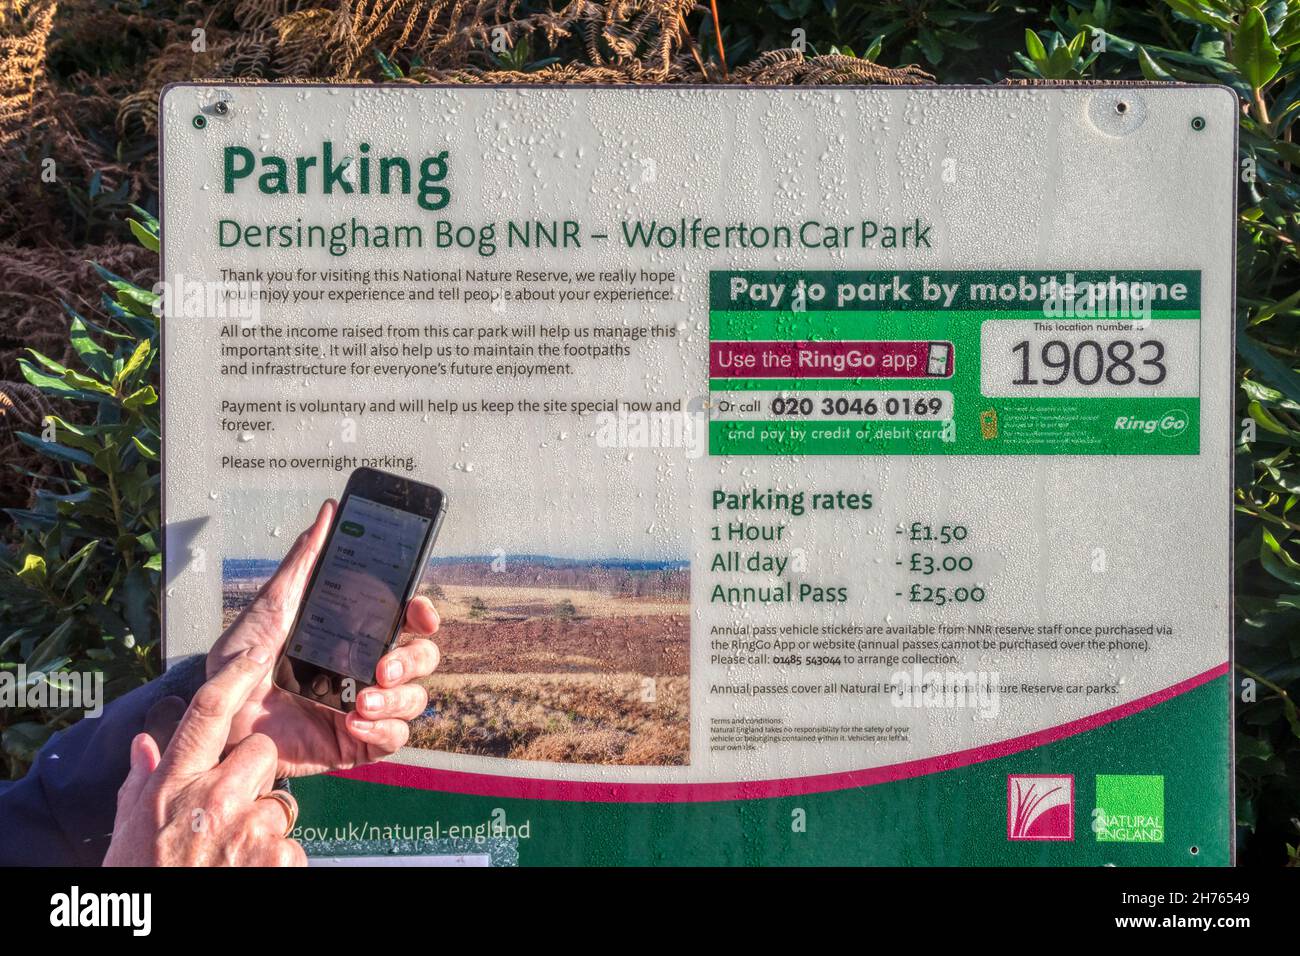 Donna che usa l'app RingGo sul suo telefono cellulare per pagare una tassa di parcheggio al parcheggio Dersingham Bog NNR a Wolferton. Foto Stock